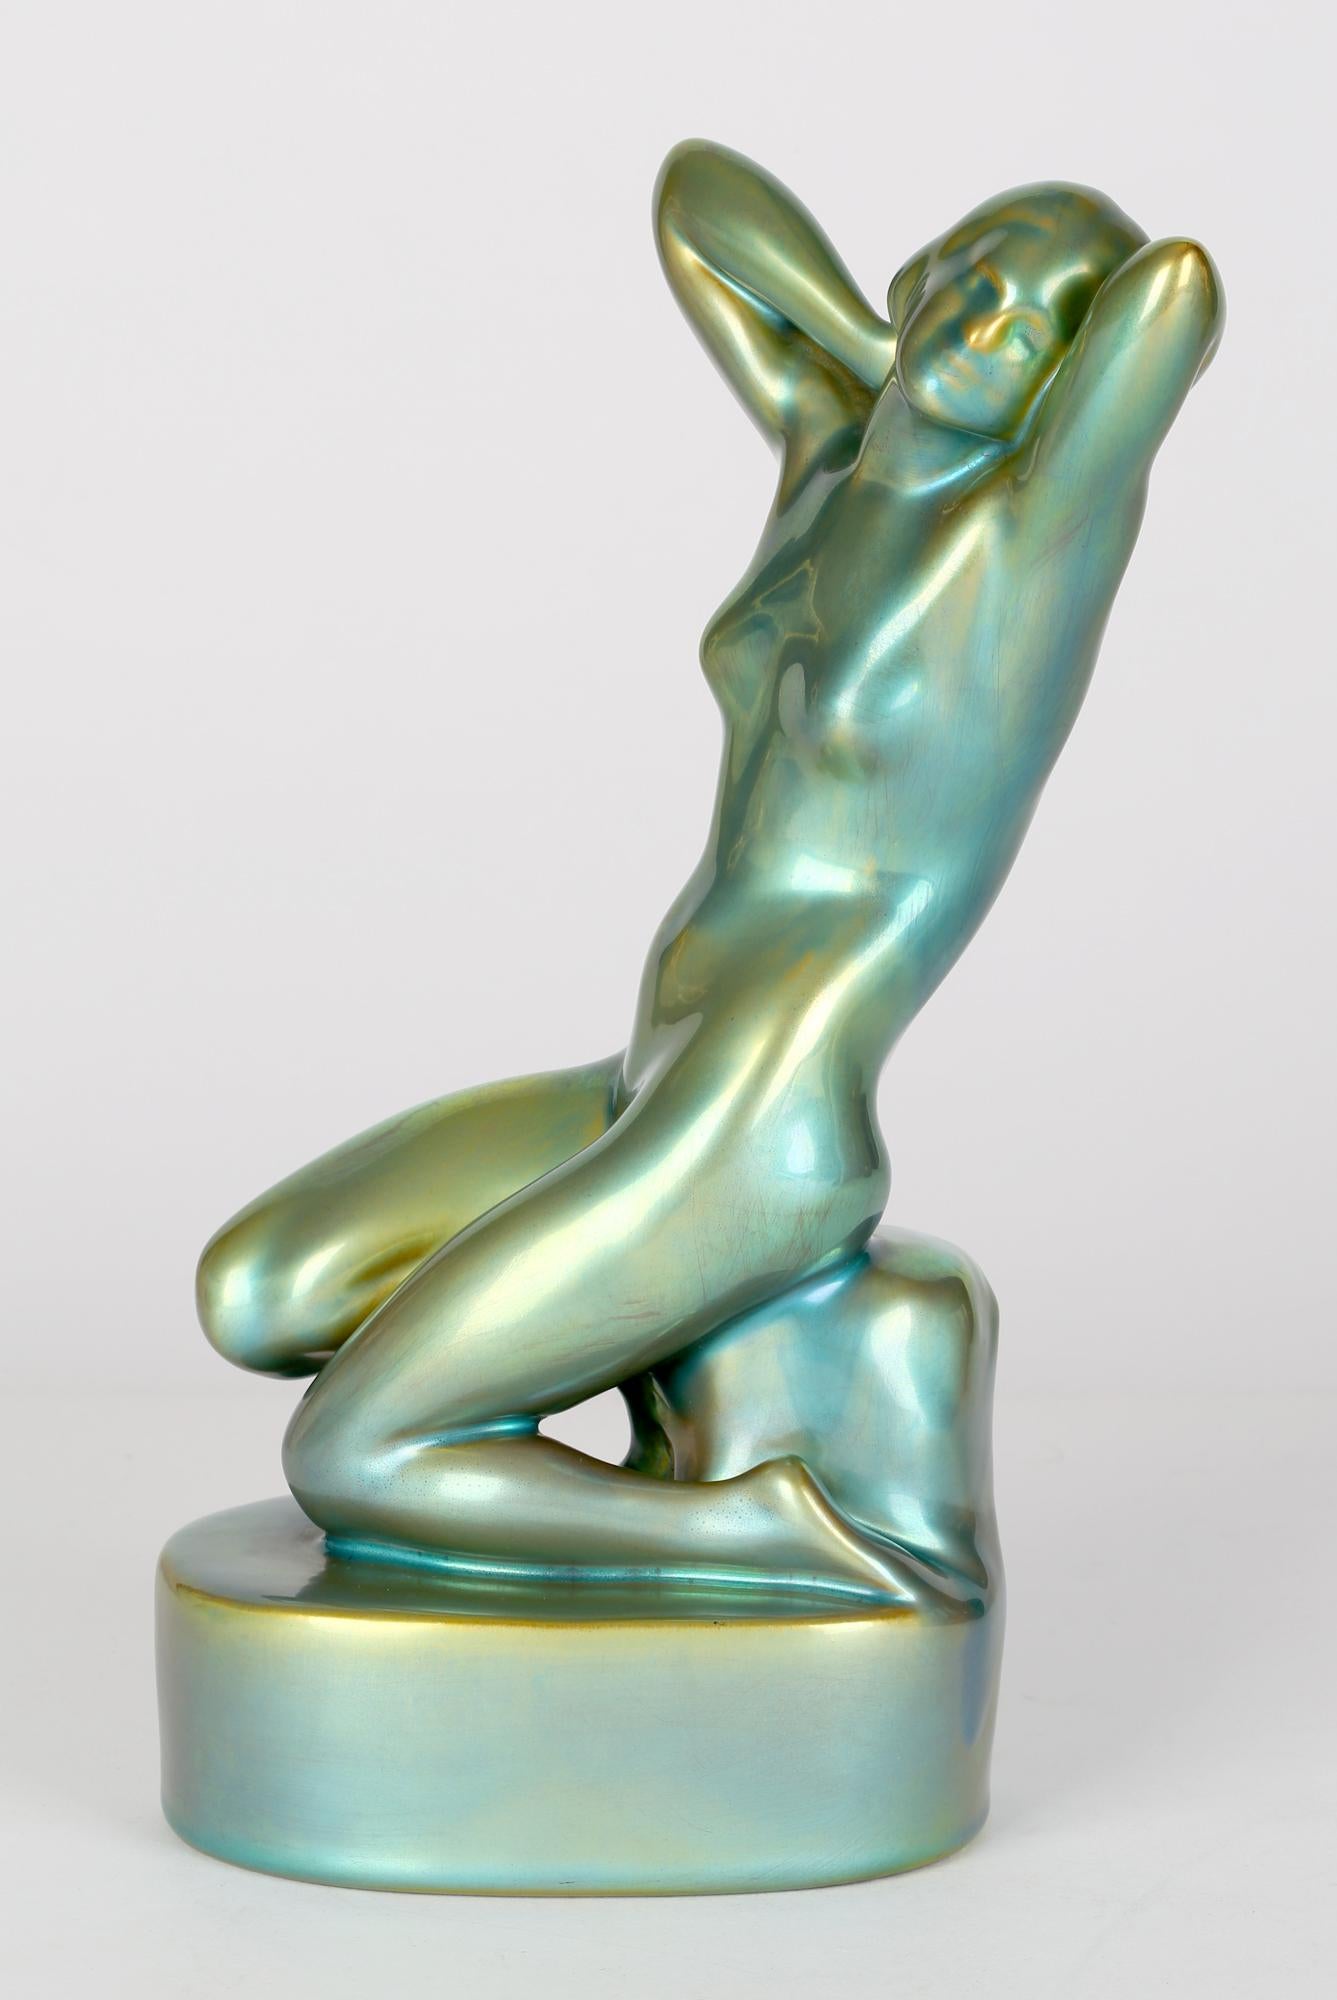 Eine sehr schöne, skulpturale Aktfigur aus ungarischer Art-Déco-Keramik in metallgrüner eosinfarbener Glasur aus der Zeit um 1930. Die Figur ist auf einem ovalen Sockel montiert und sitzt auf einem Fels und knielt auf einem Bein, wobei sie die Hände